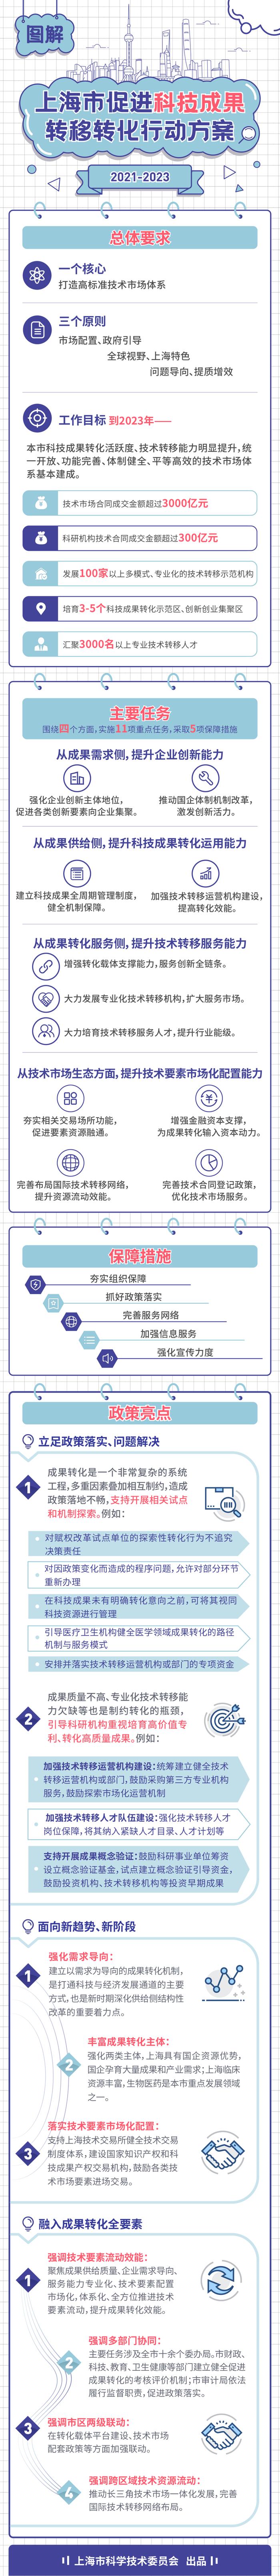 技术市场合同成交金额超三千亿 上海这份三年行动计划有哪些目标